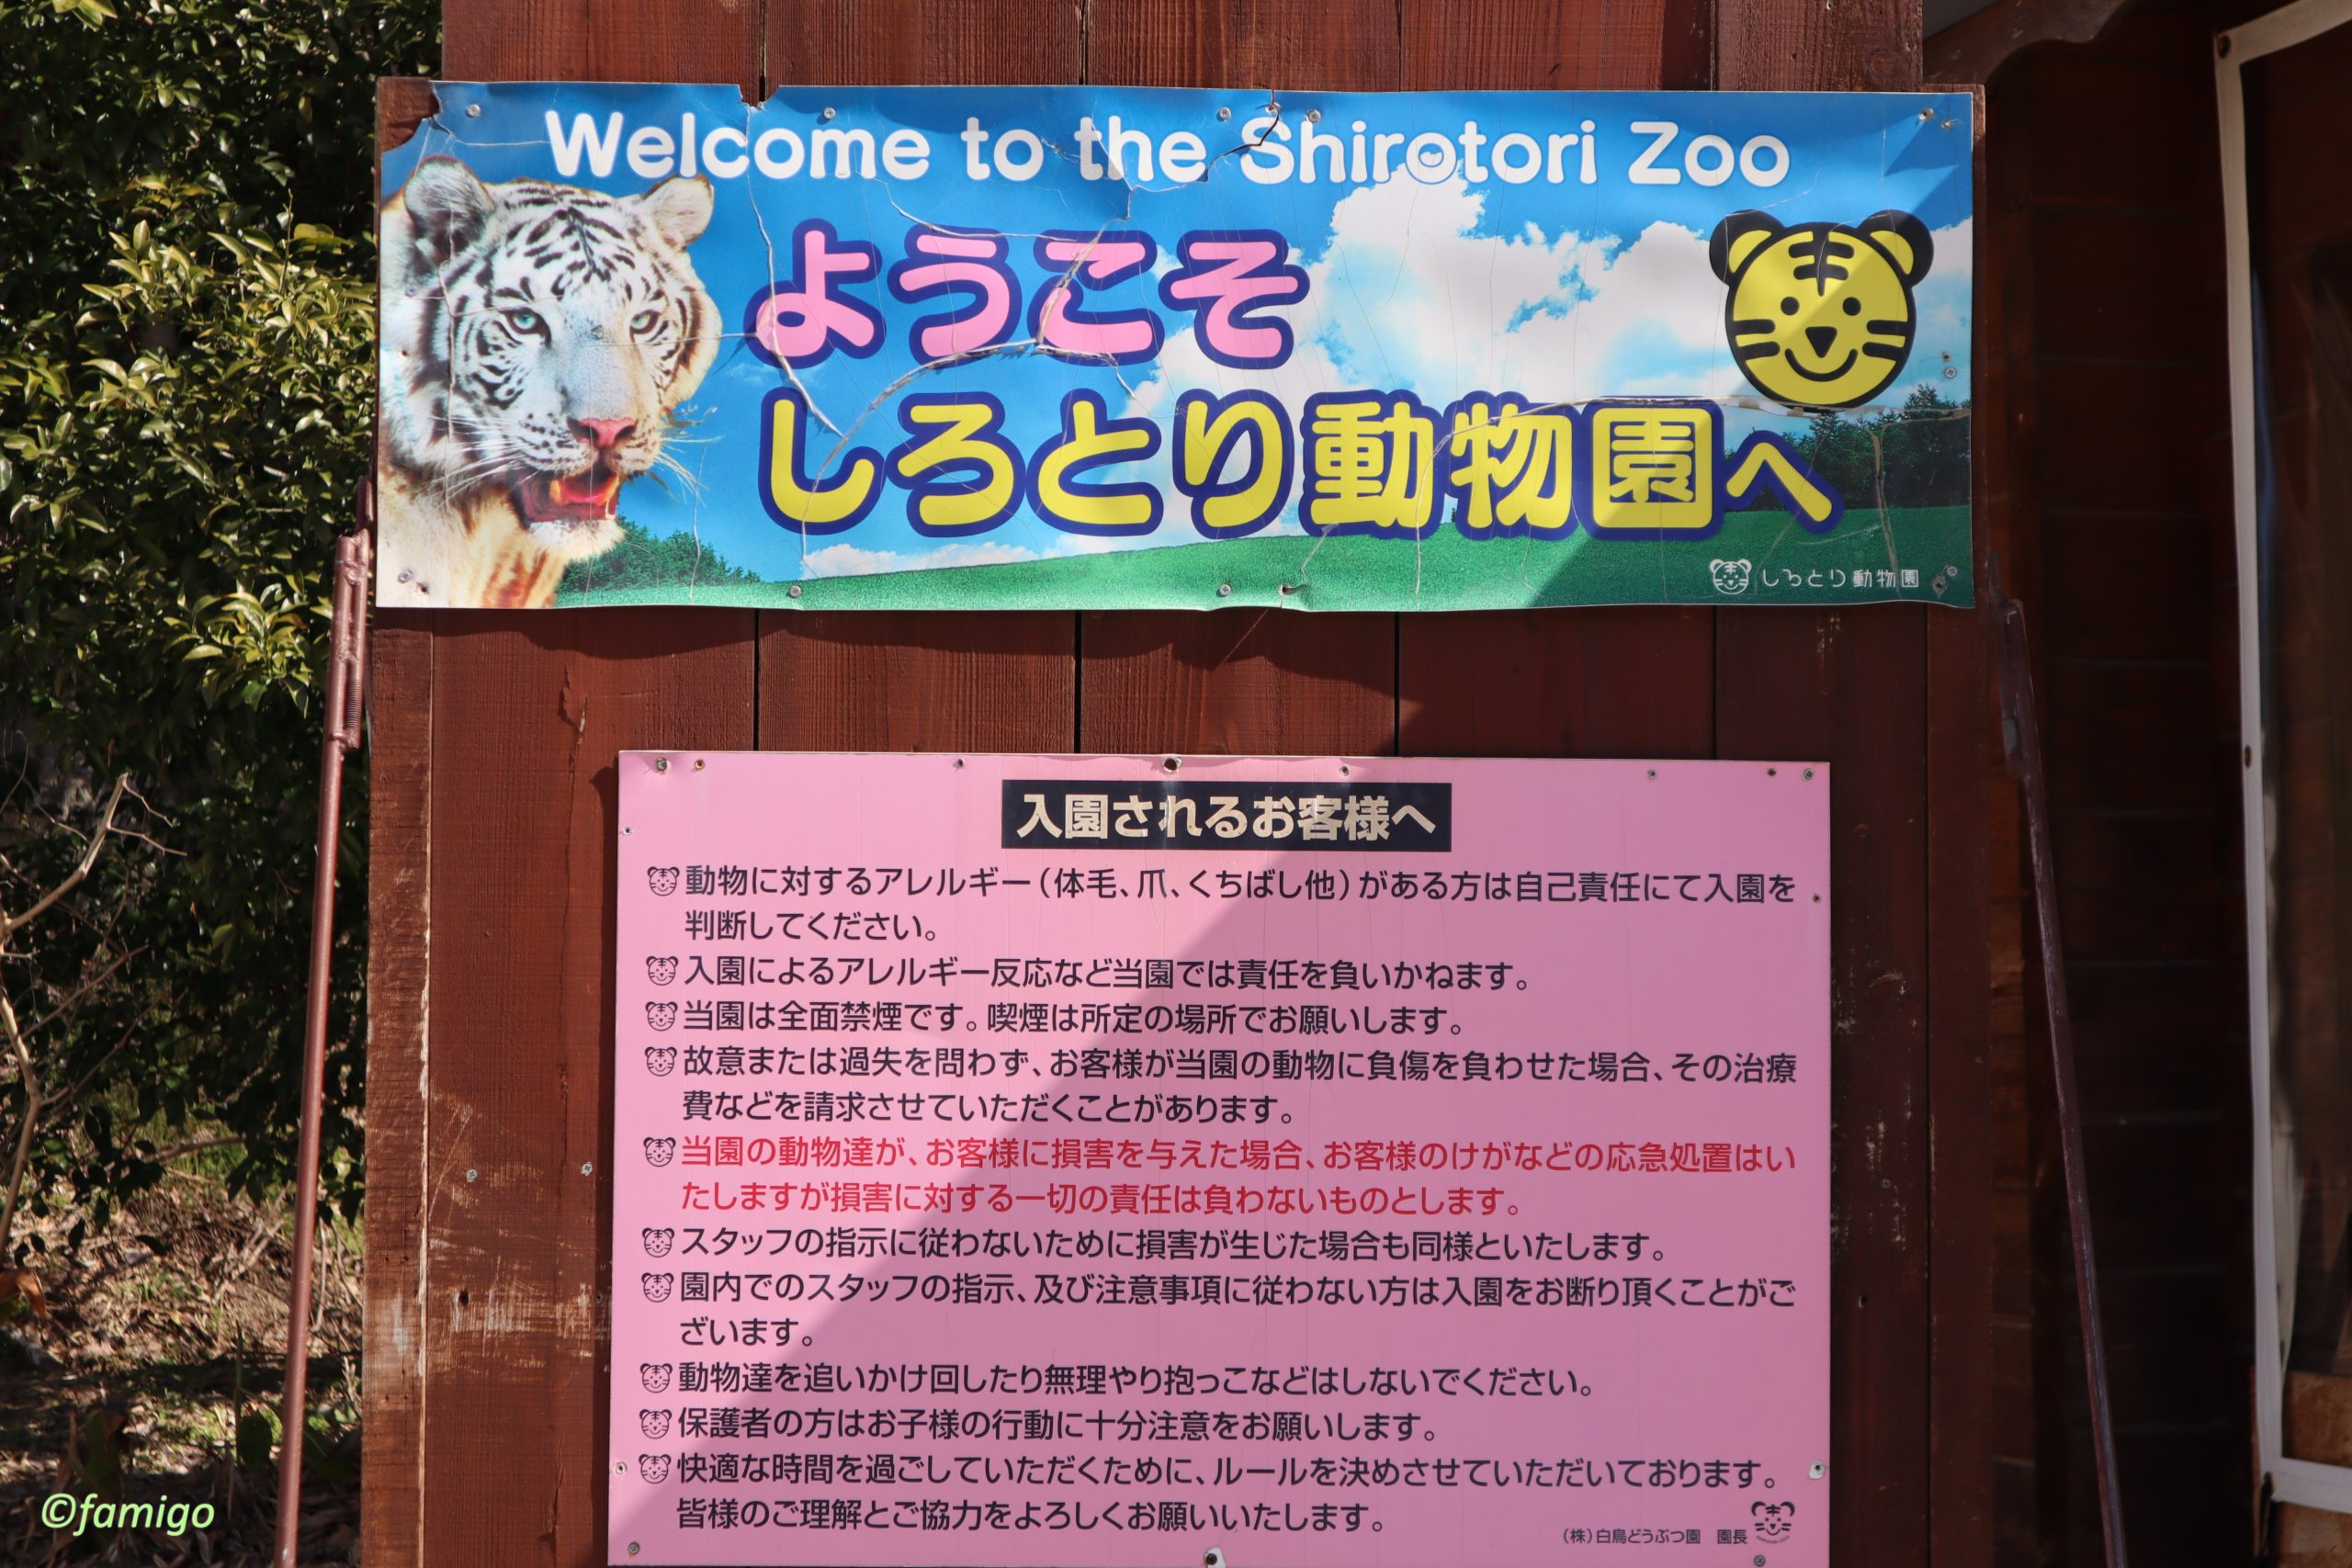 しろとり動物園の注意事項